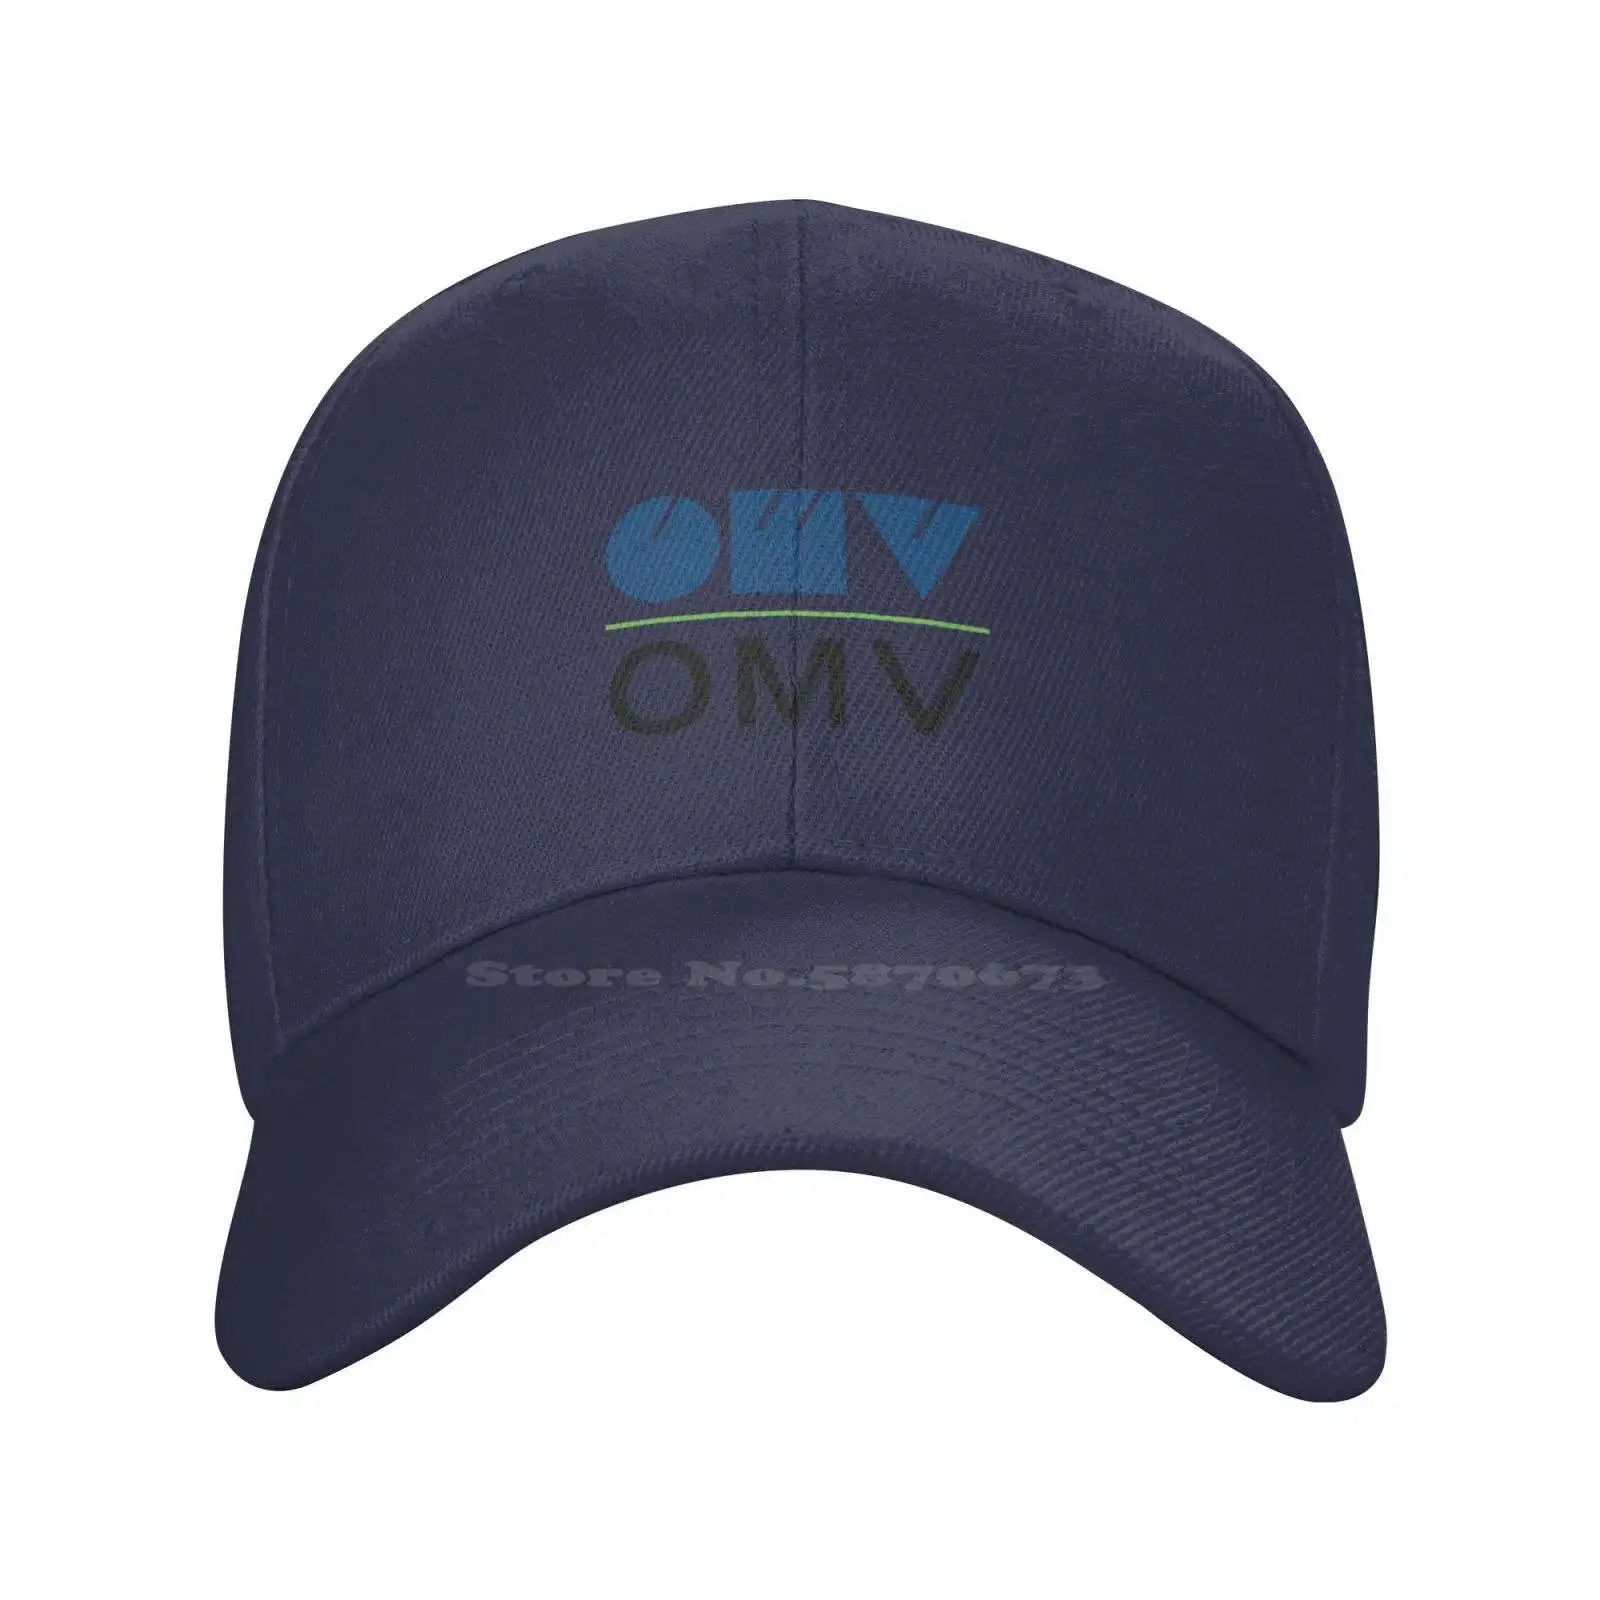 Печатный графический логотип Omv, высококачественная джинсовая кепка, вязаная шапка, бейсболка